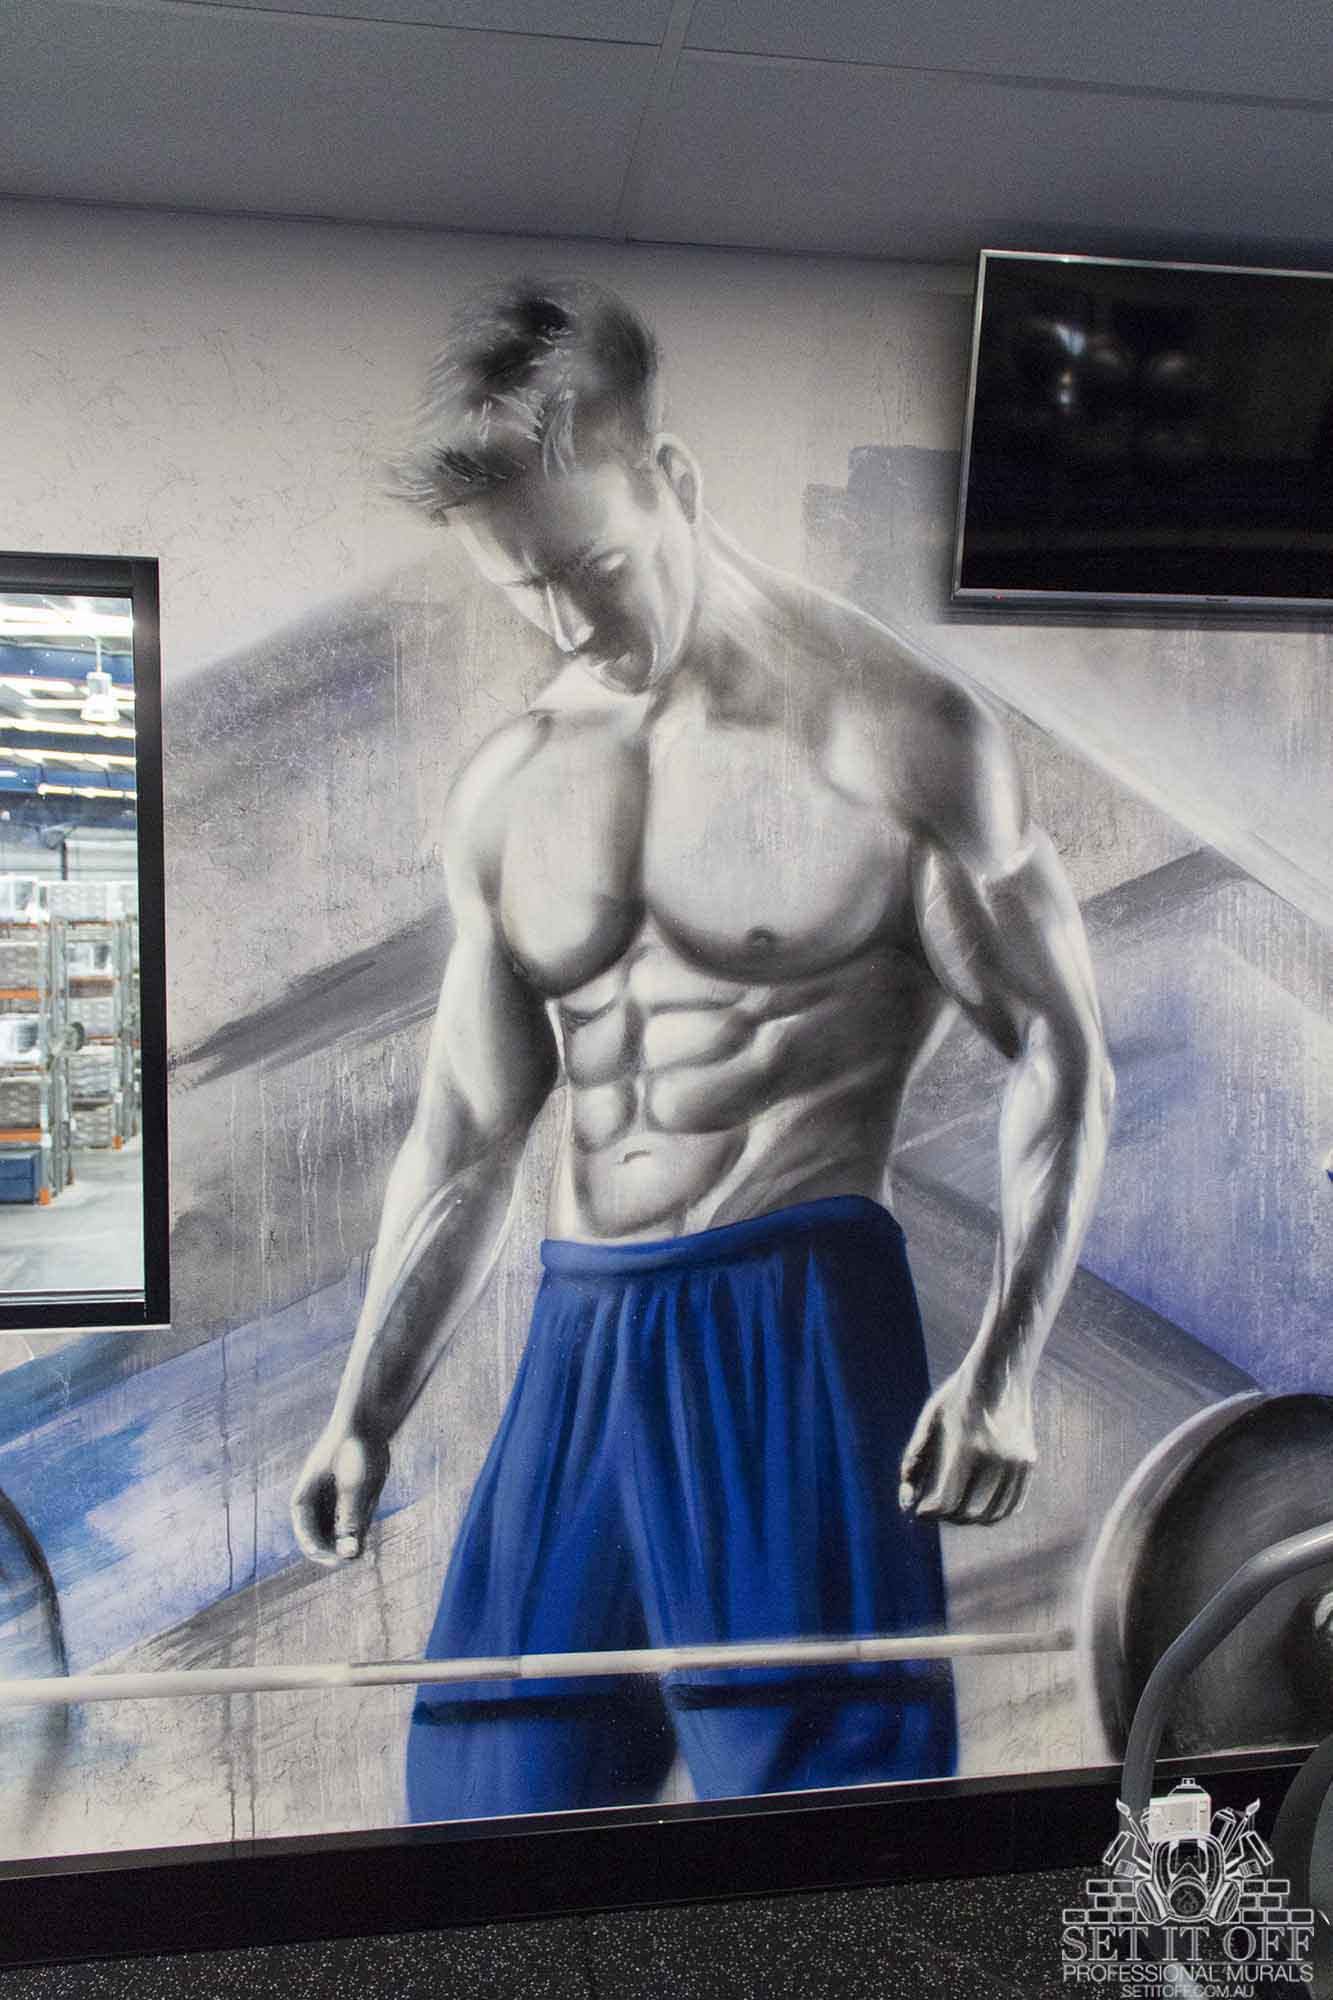 Graffiti mural in a gym